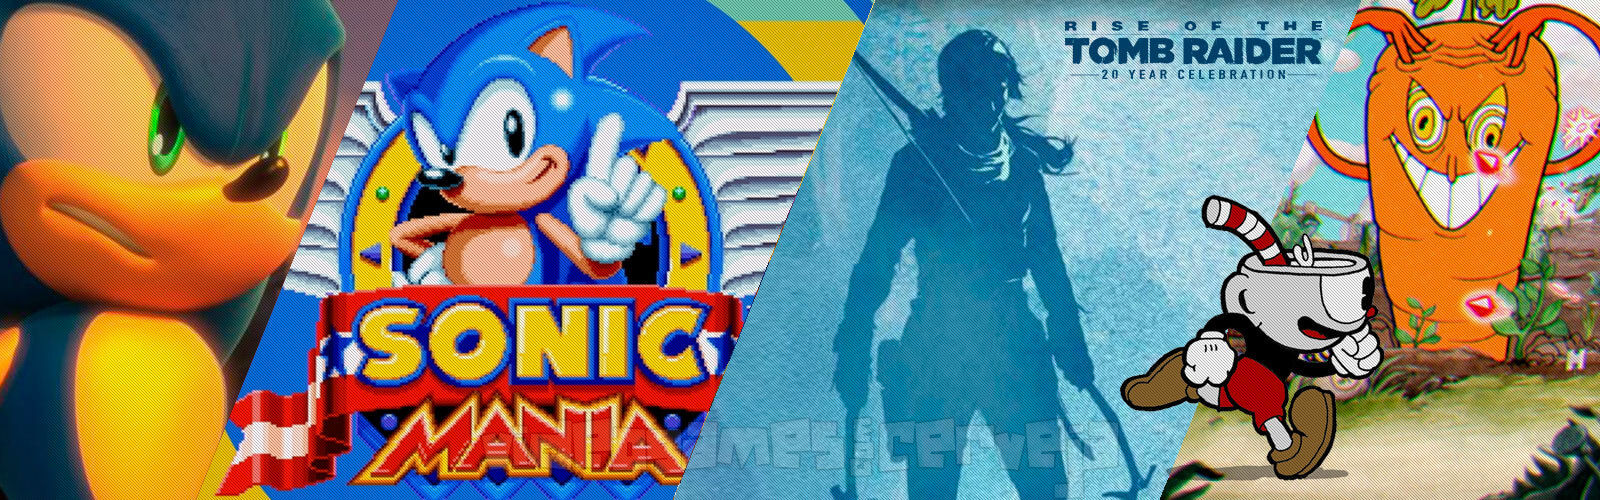 Resumo da semana - Gameplay de Cuphead; Novidades do Sonic; Rise of the Tomb Raider para PS4; Pac-Man Championship Edition 2 e mais.. Cover